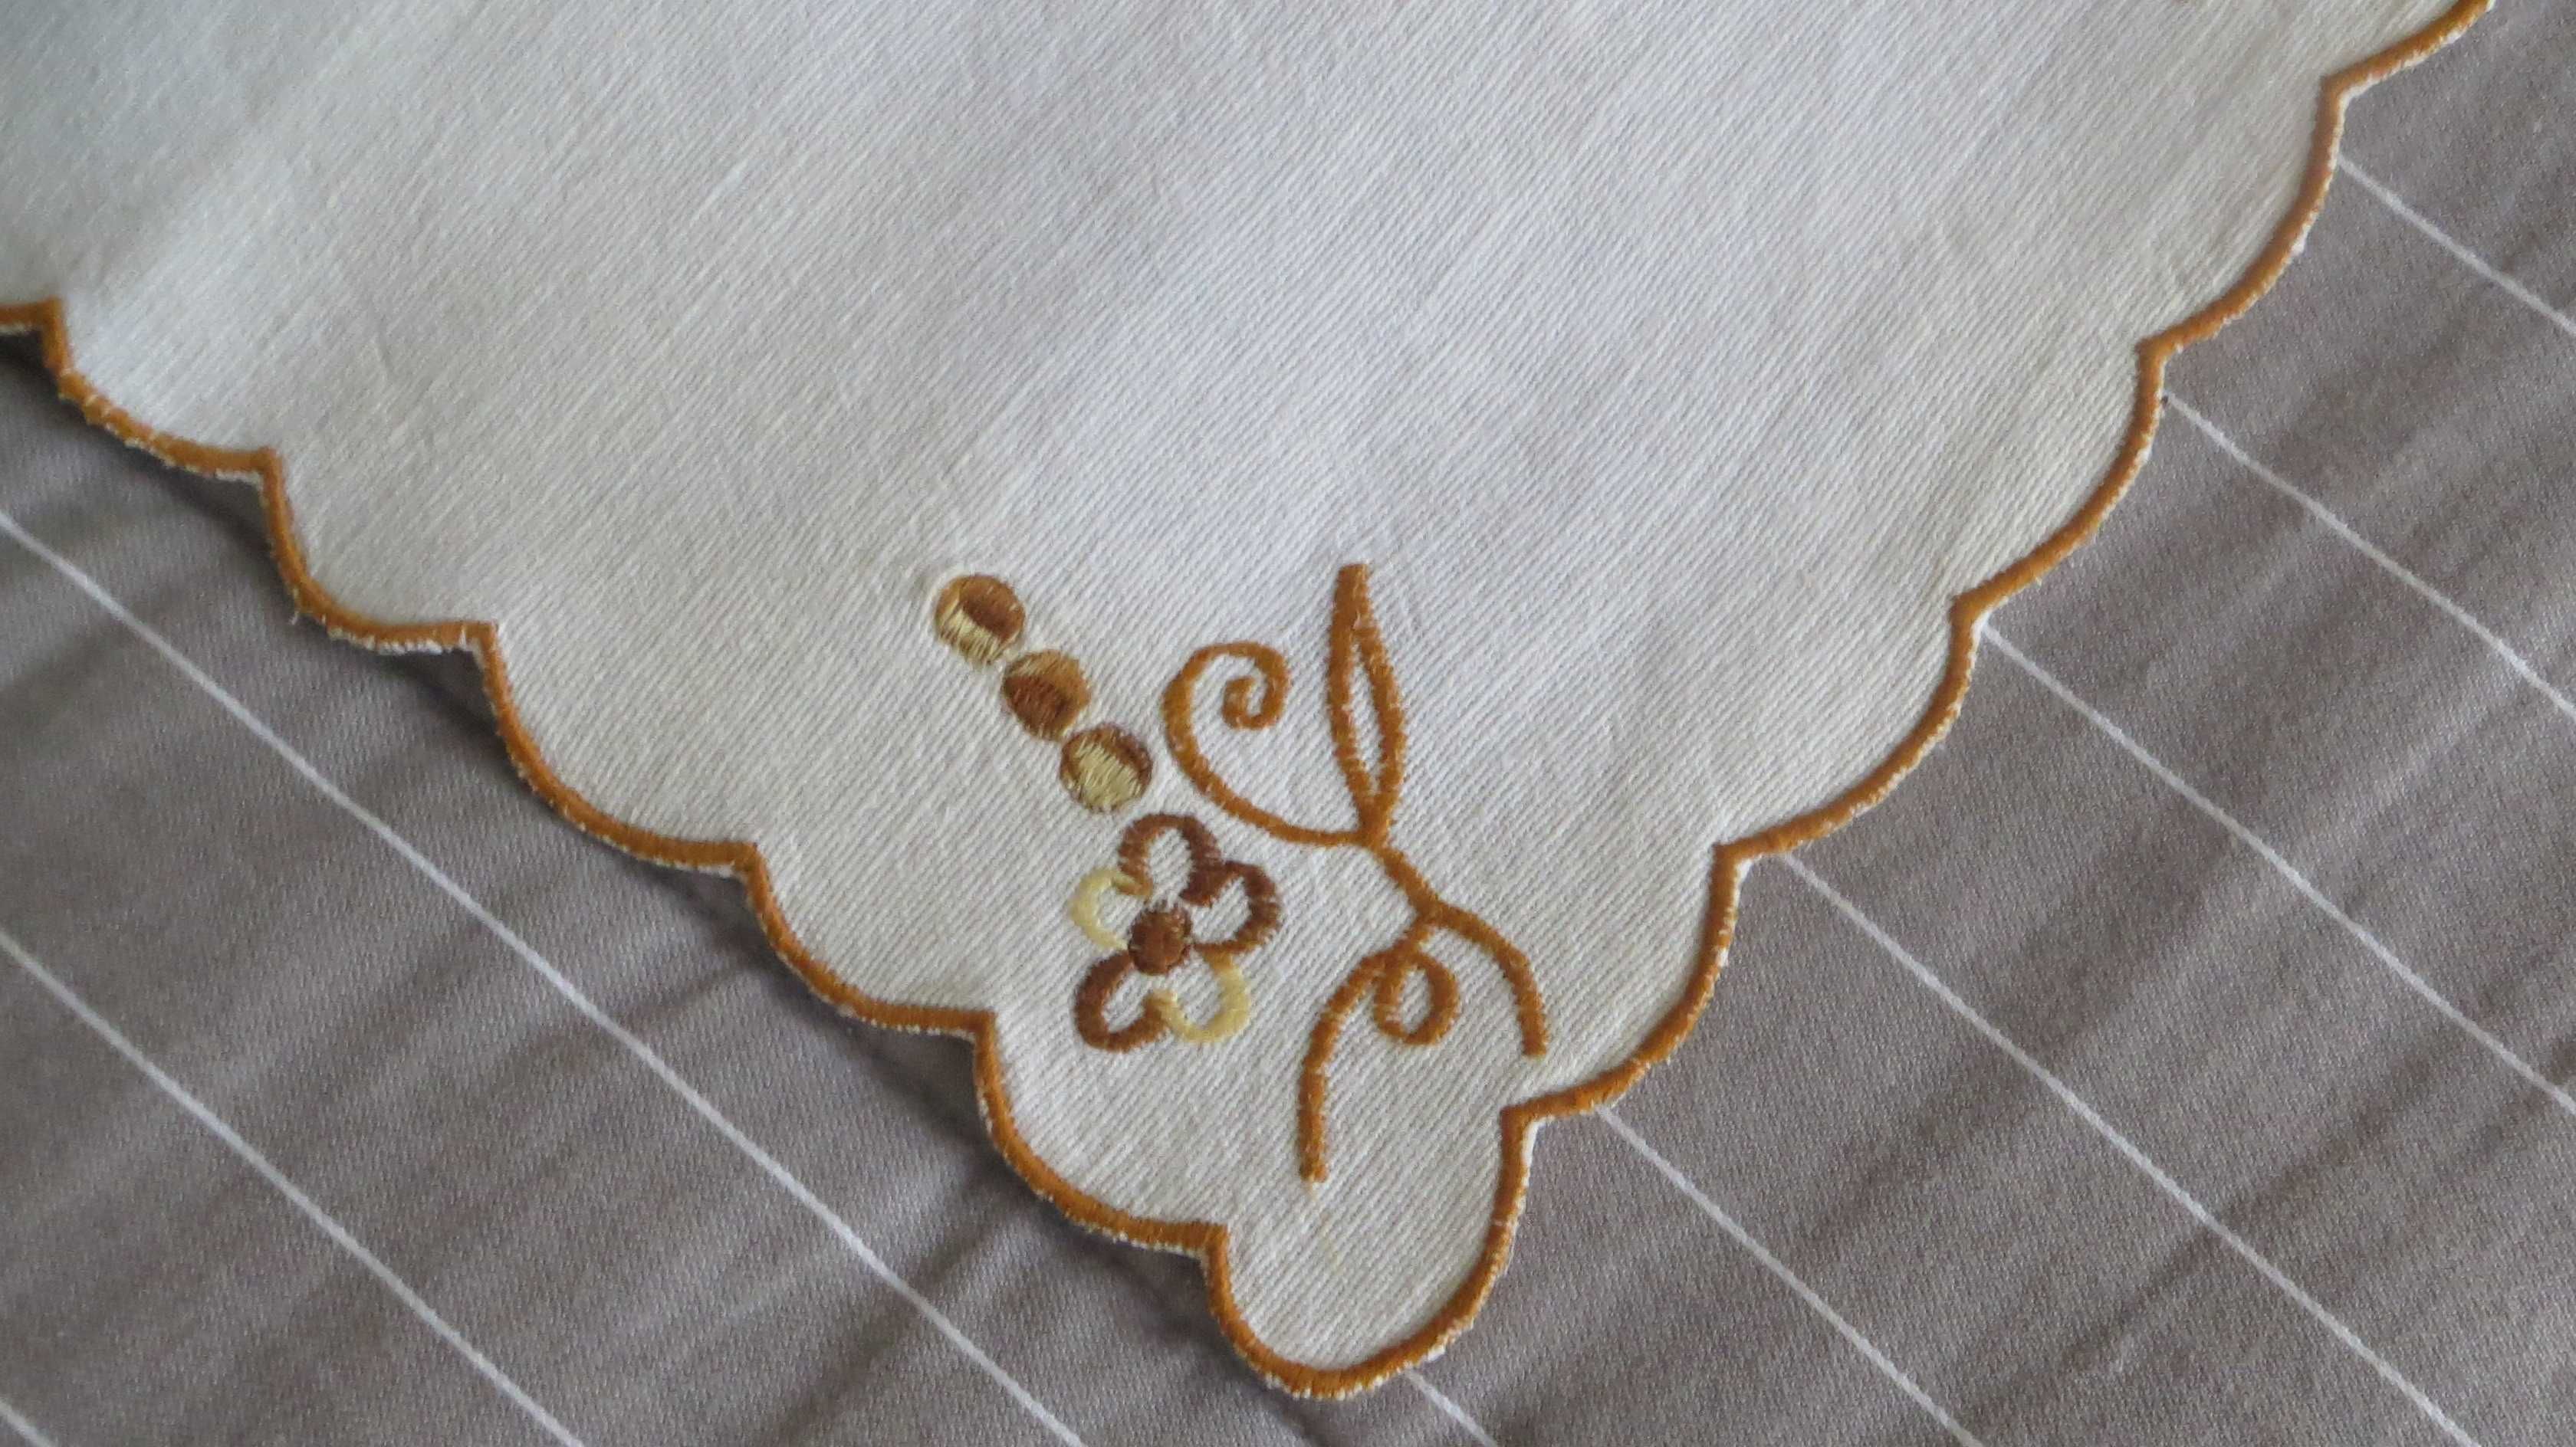 Antiguidades Napron Linho tecido à mão orlado e bordado - 35 X 25 cm